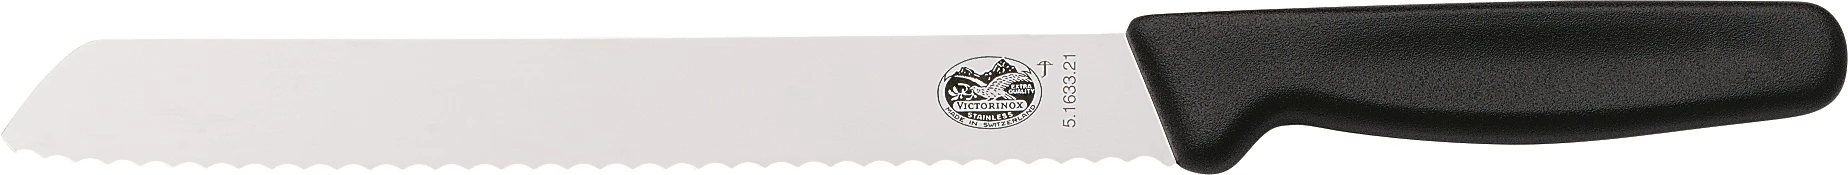 Victorinox brødkniv med plastgreb, skrå, 18 cm